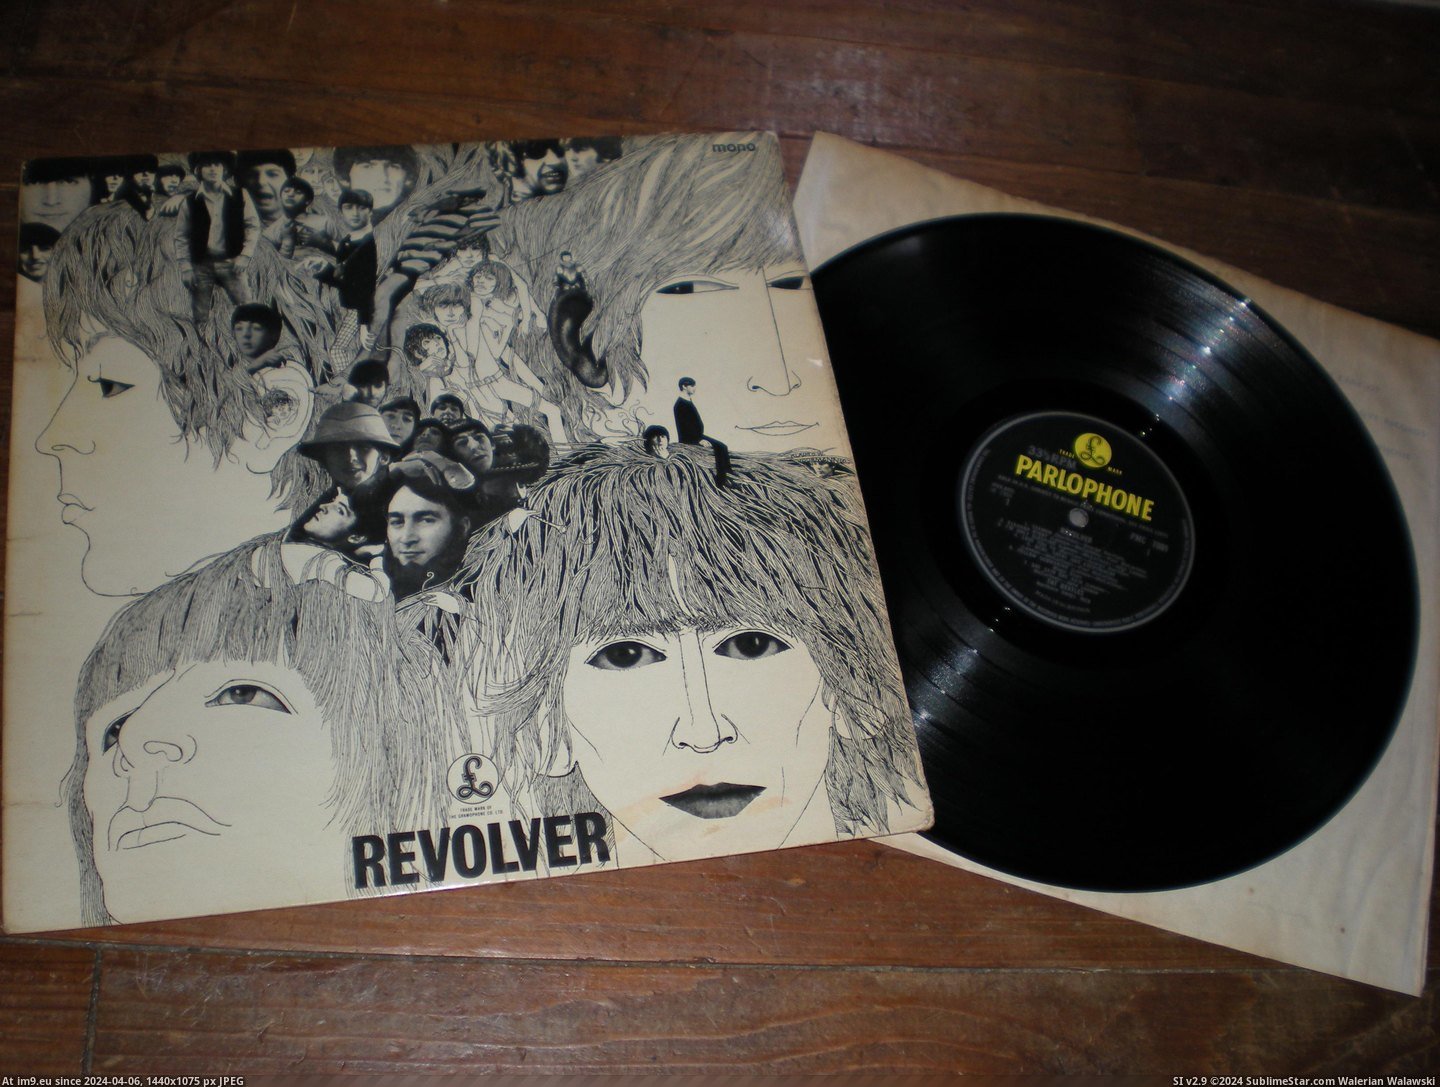  #Revolver  Revolver Mix 11 2 Pic. (Obraz z album new 1))